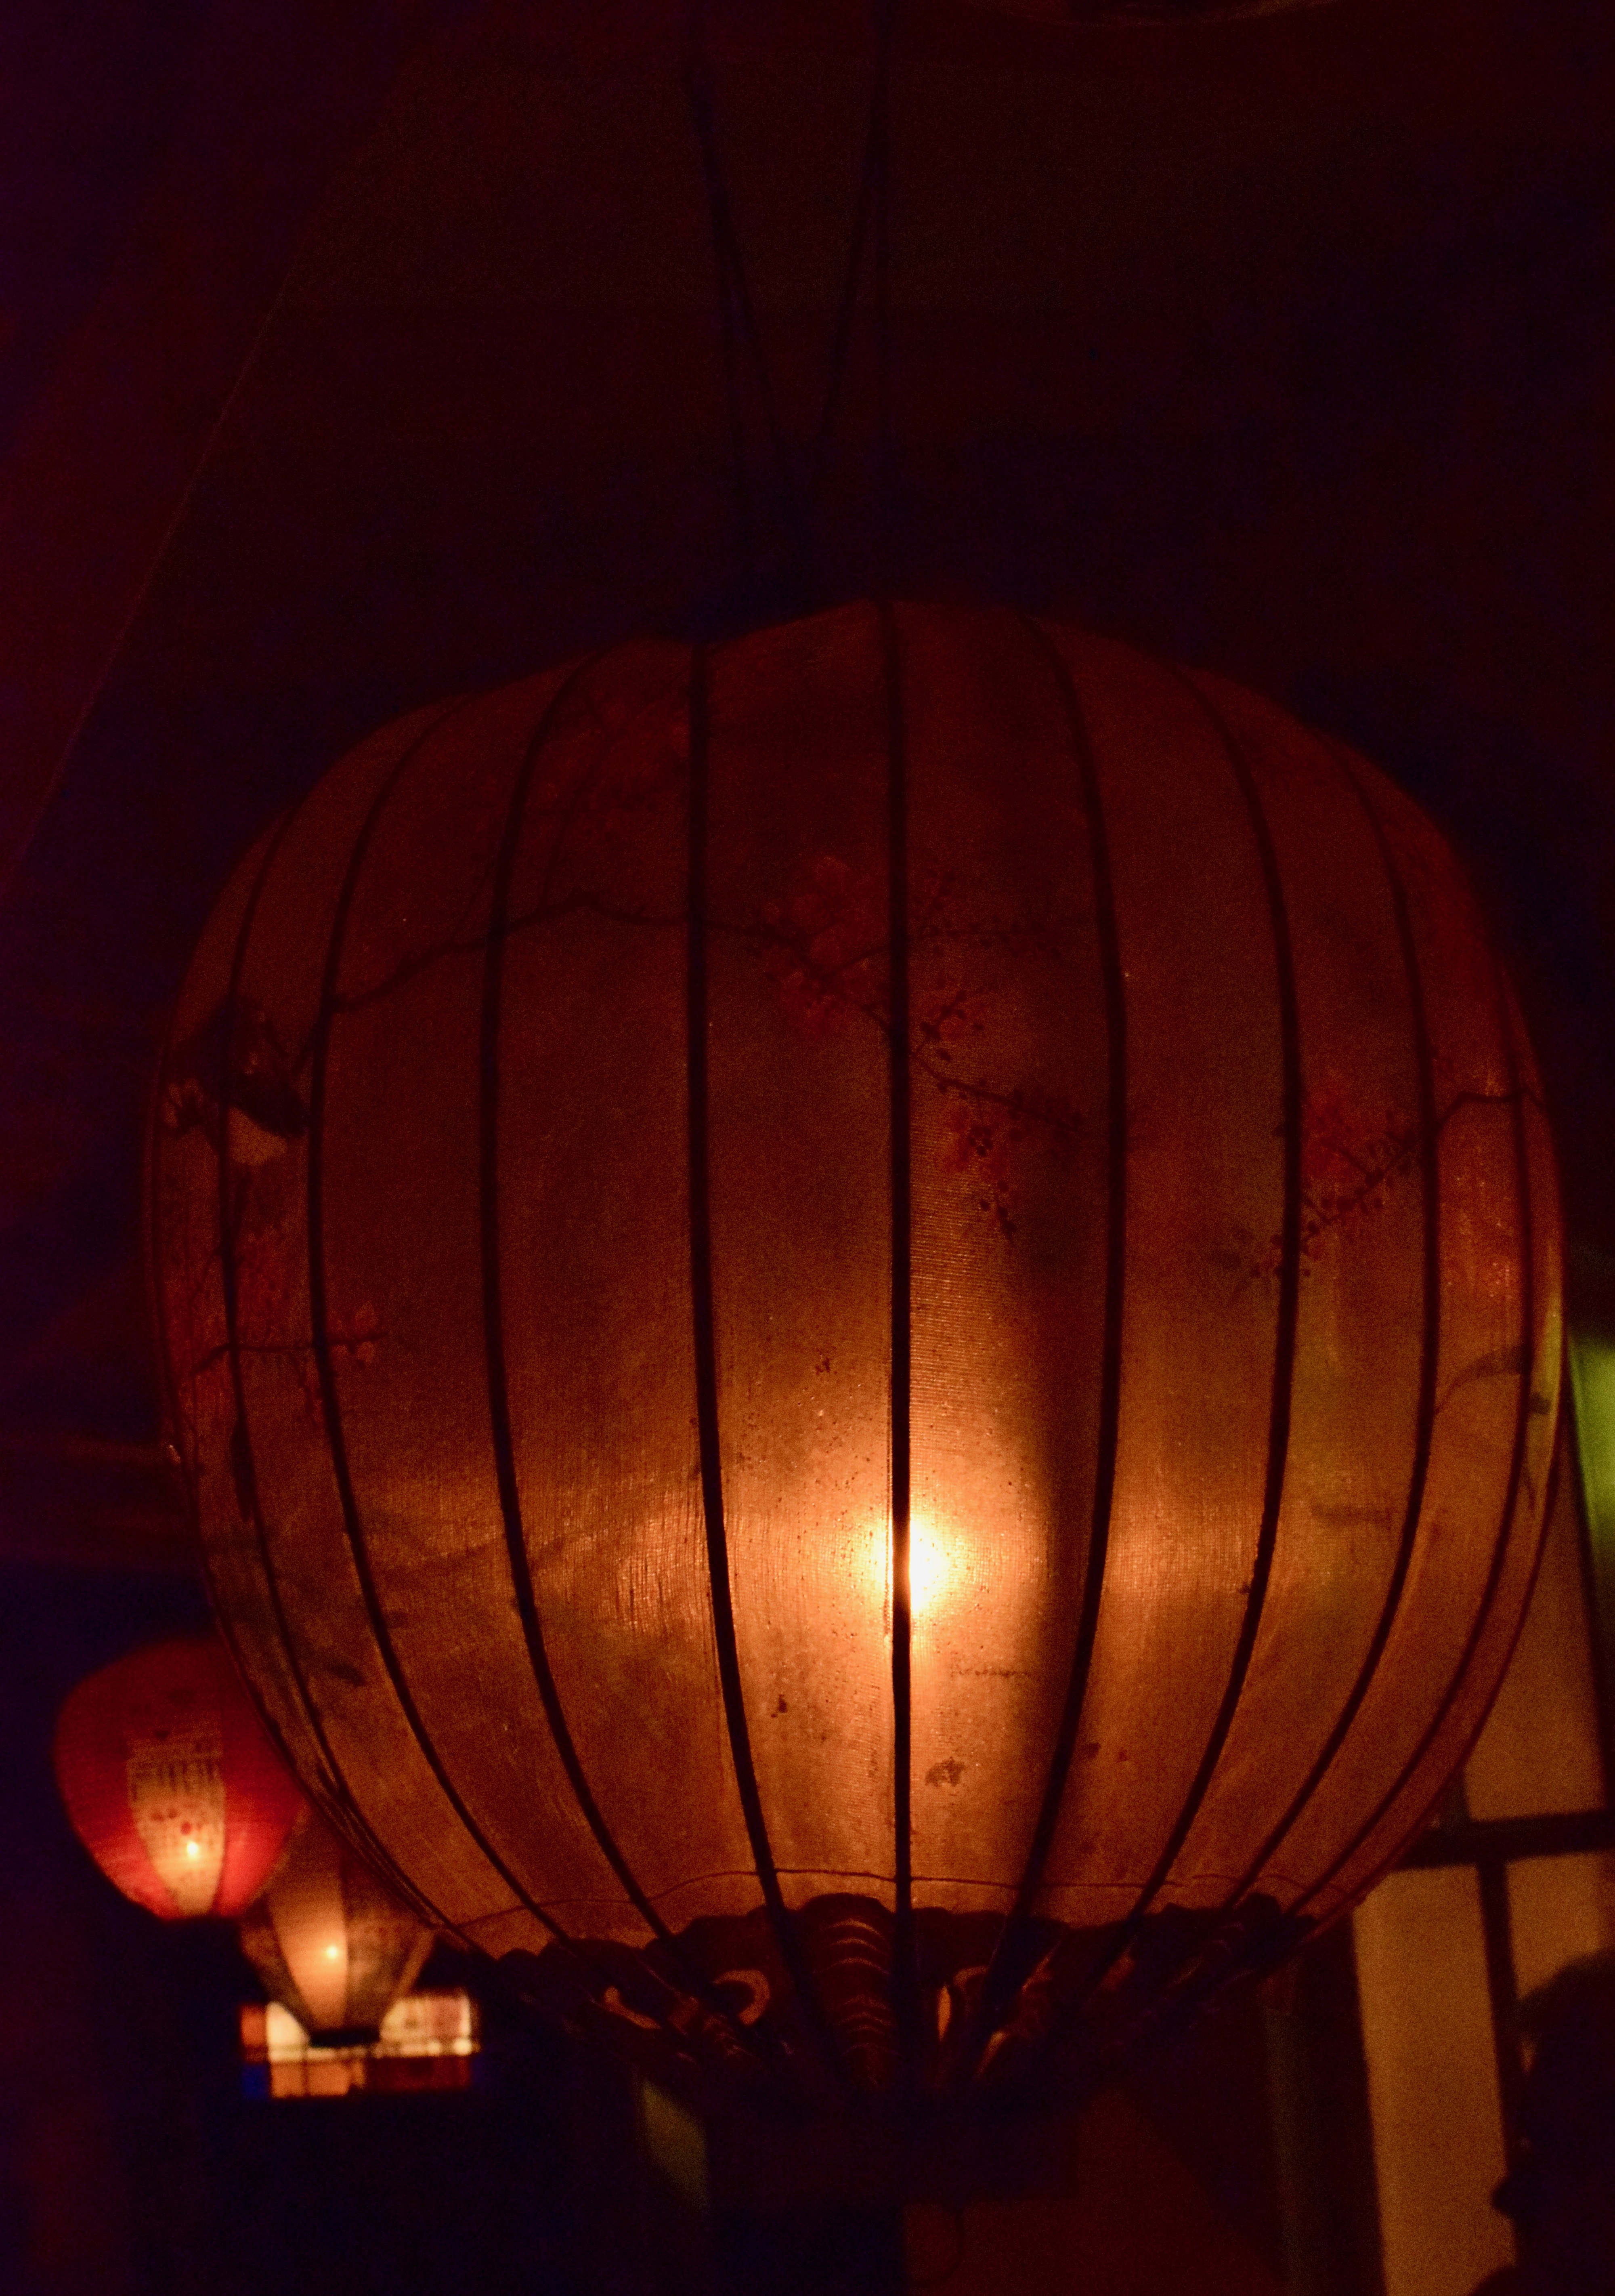 It's the weekend! Number 115, Silk Lanterns on Illumination Night, Martha's Vineyard